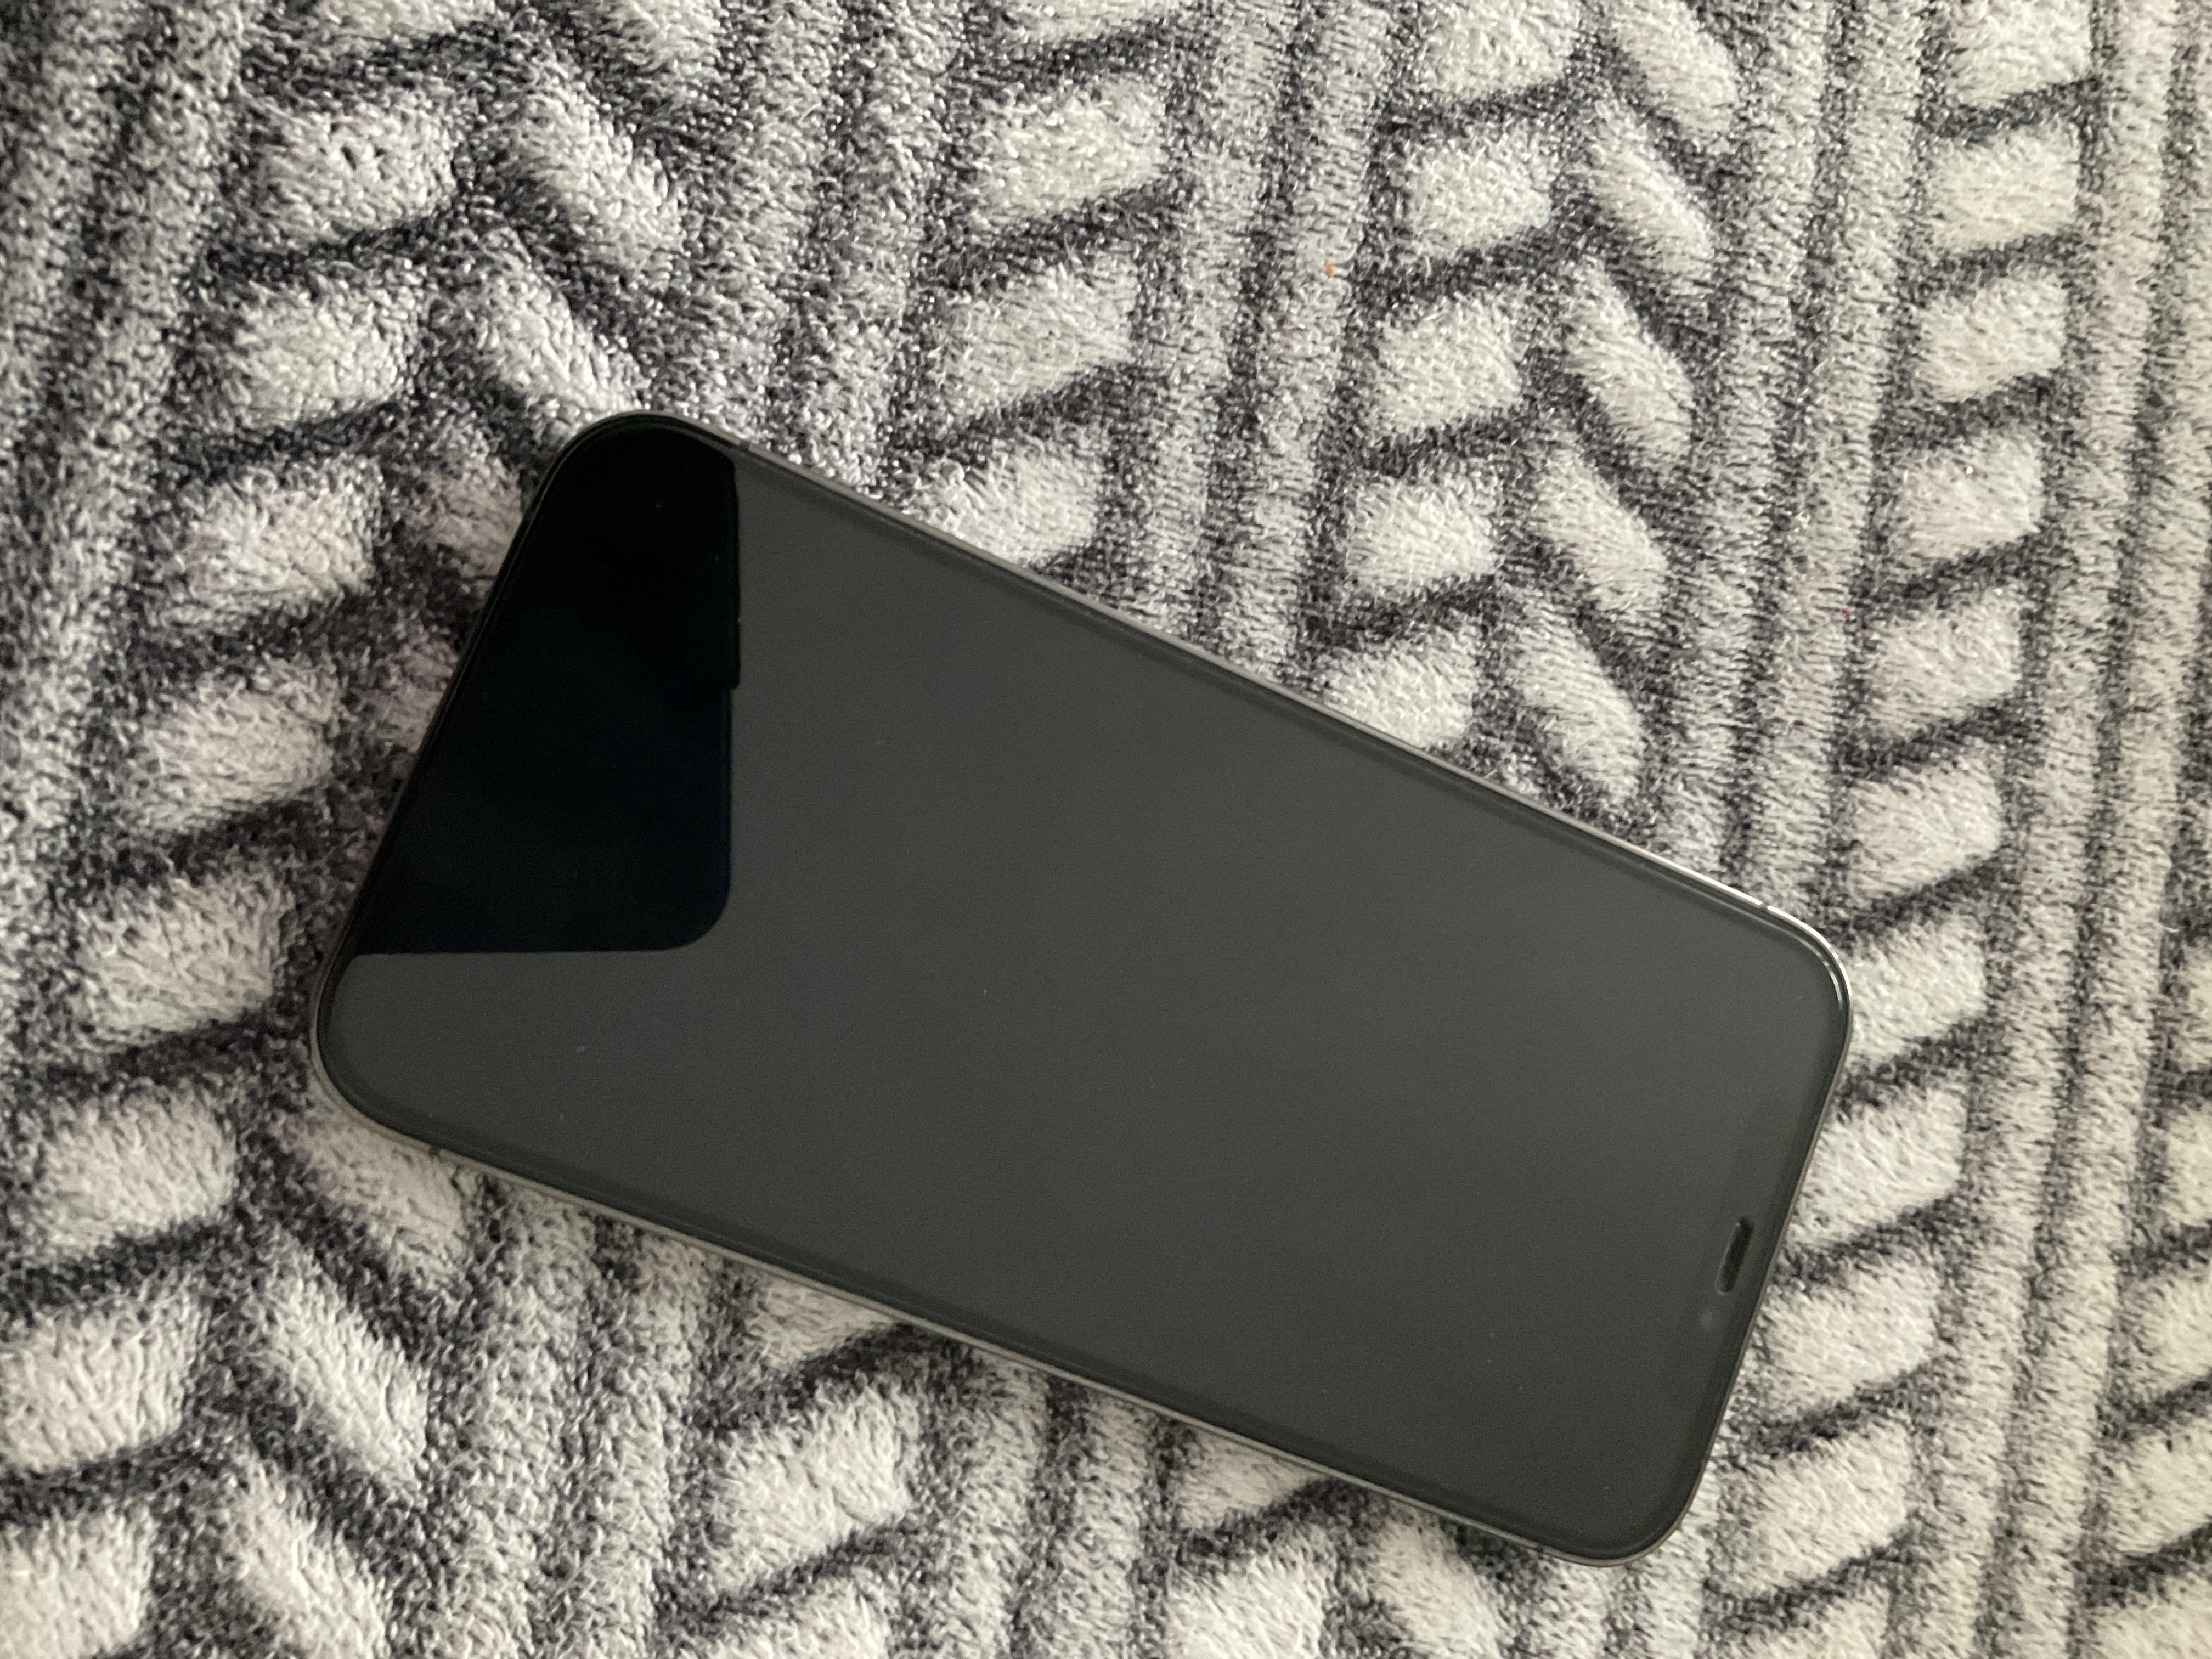 Verre trempé avec bordure noire pour iPhone 13 Pro Max